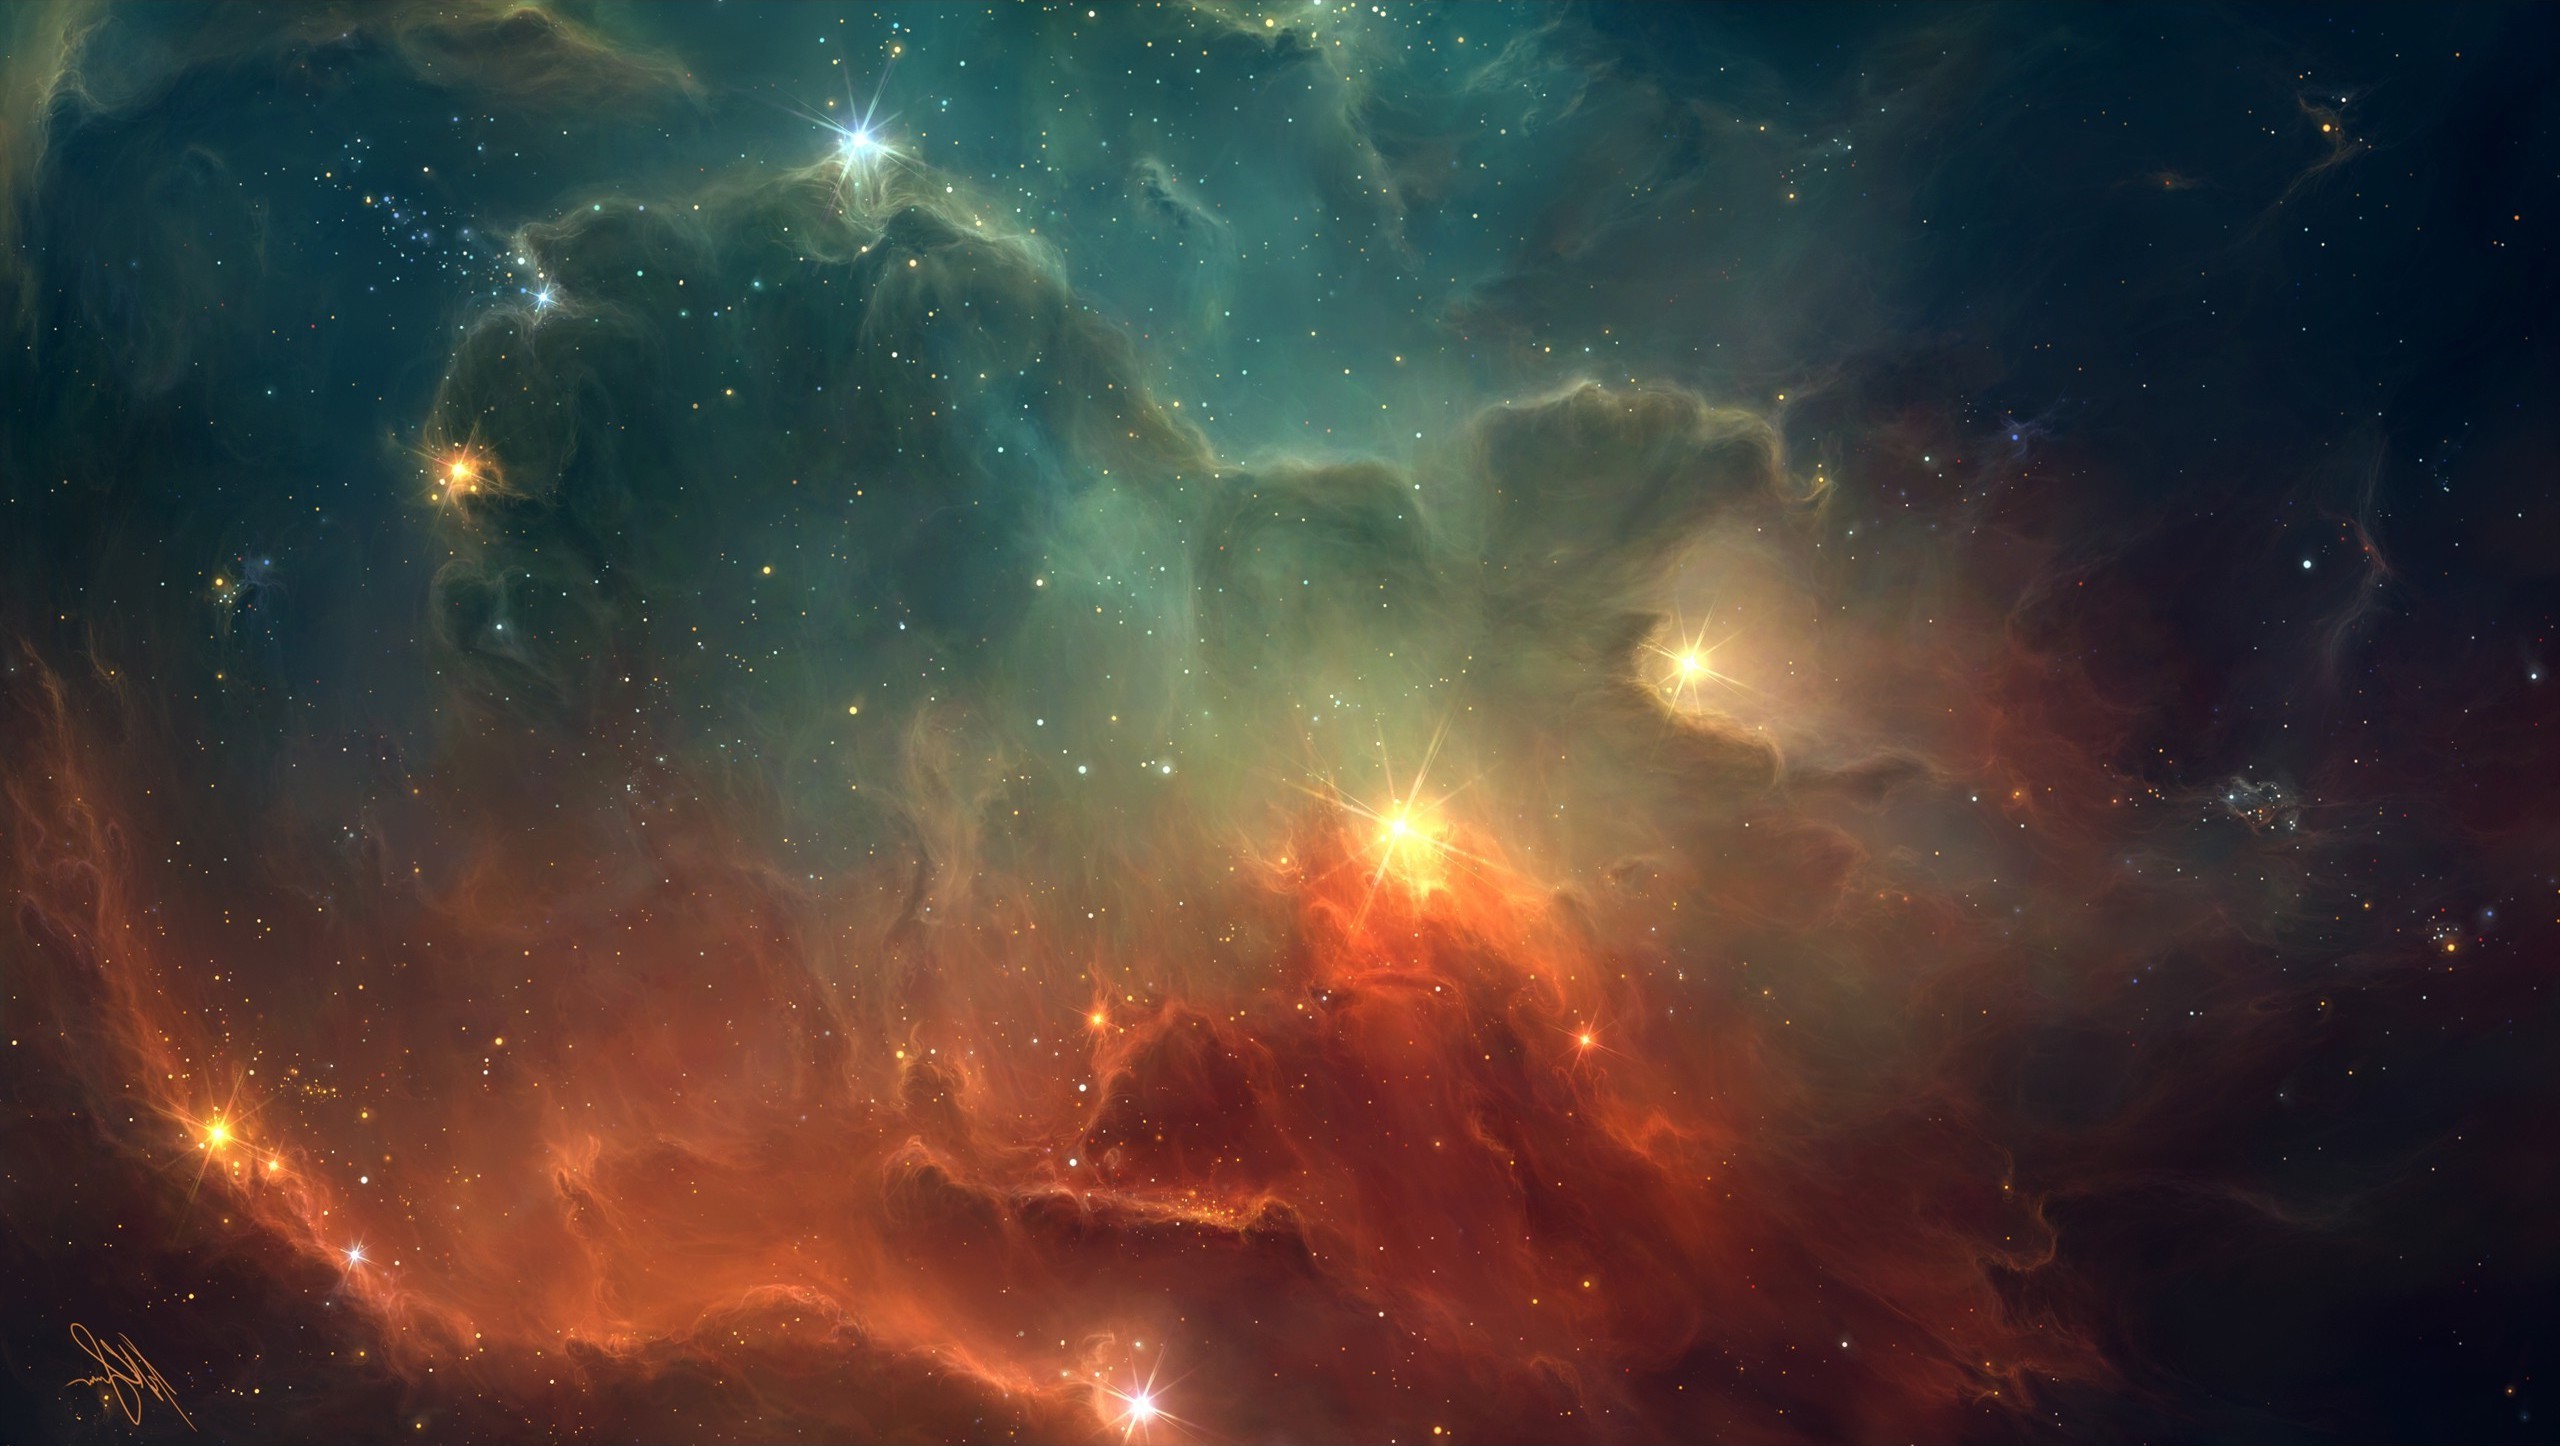 宇宙星雲の壁紙,空,自然,星雲,宇宙,雰囲気